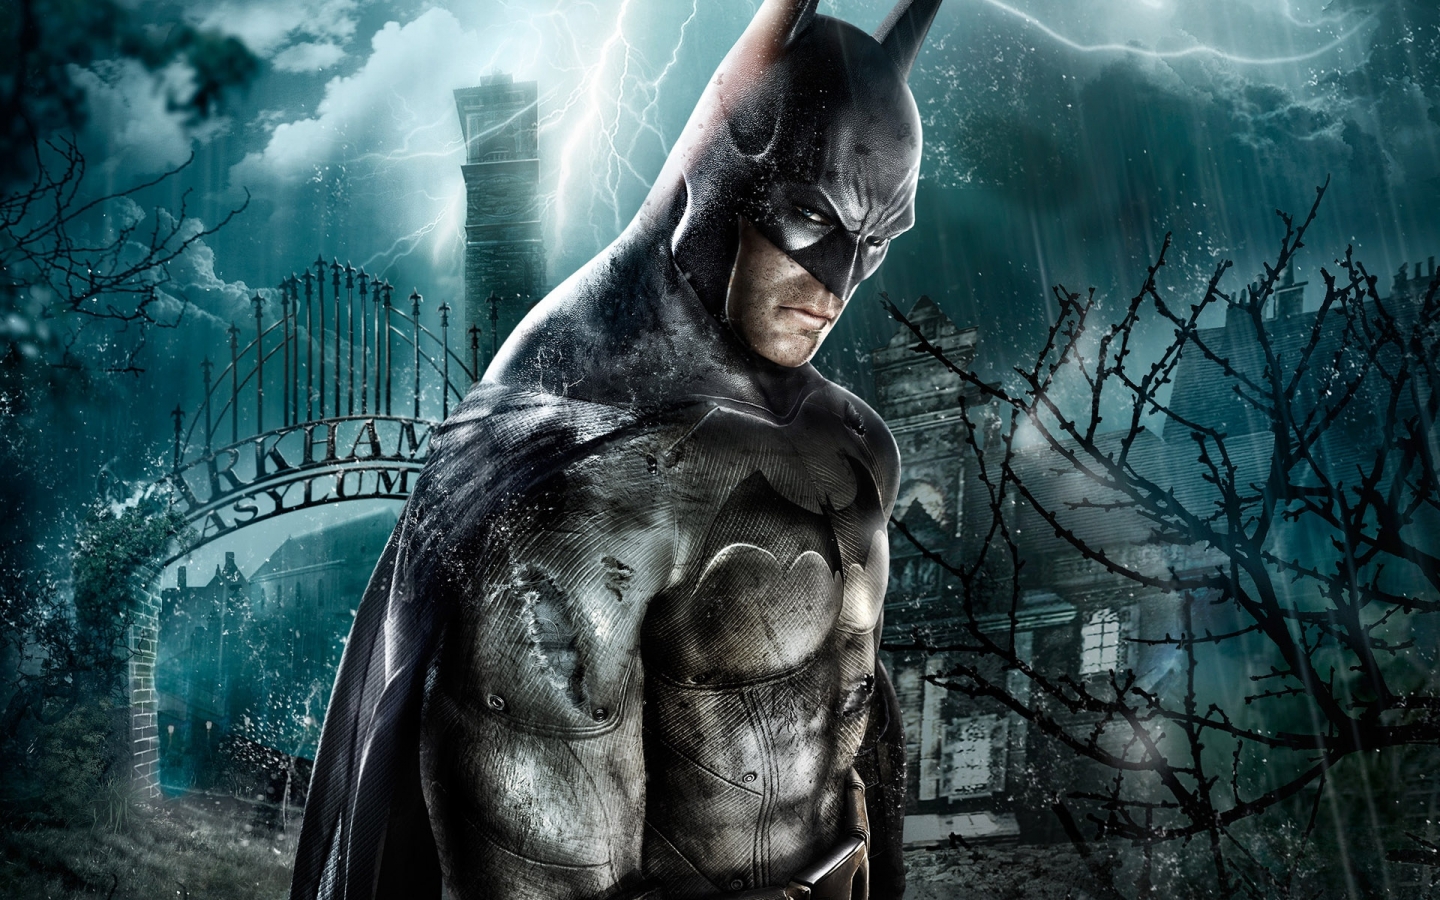 Batman Character for 1440 x 900 widescreen resolution